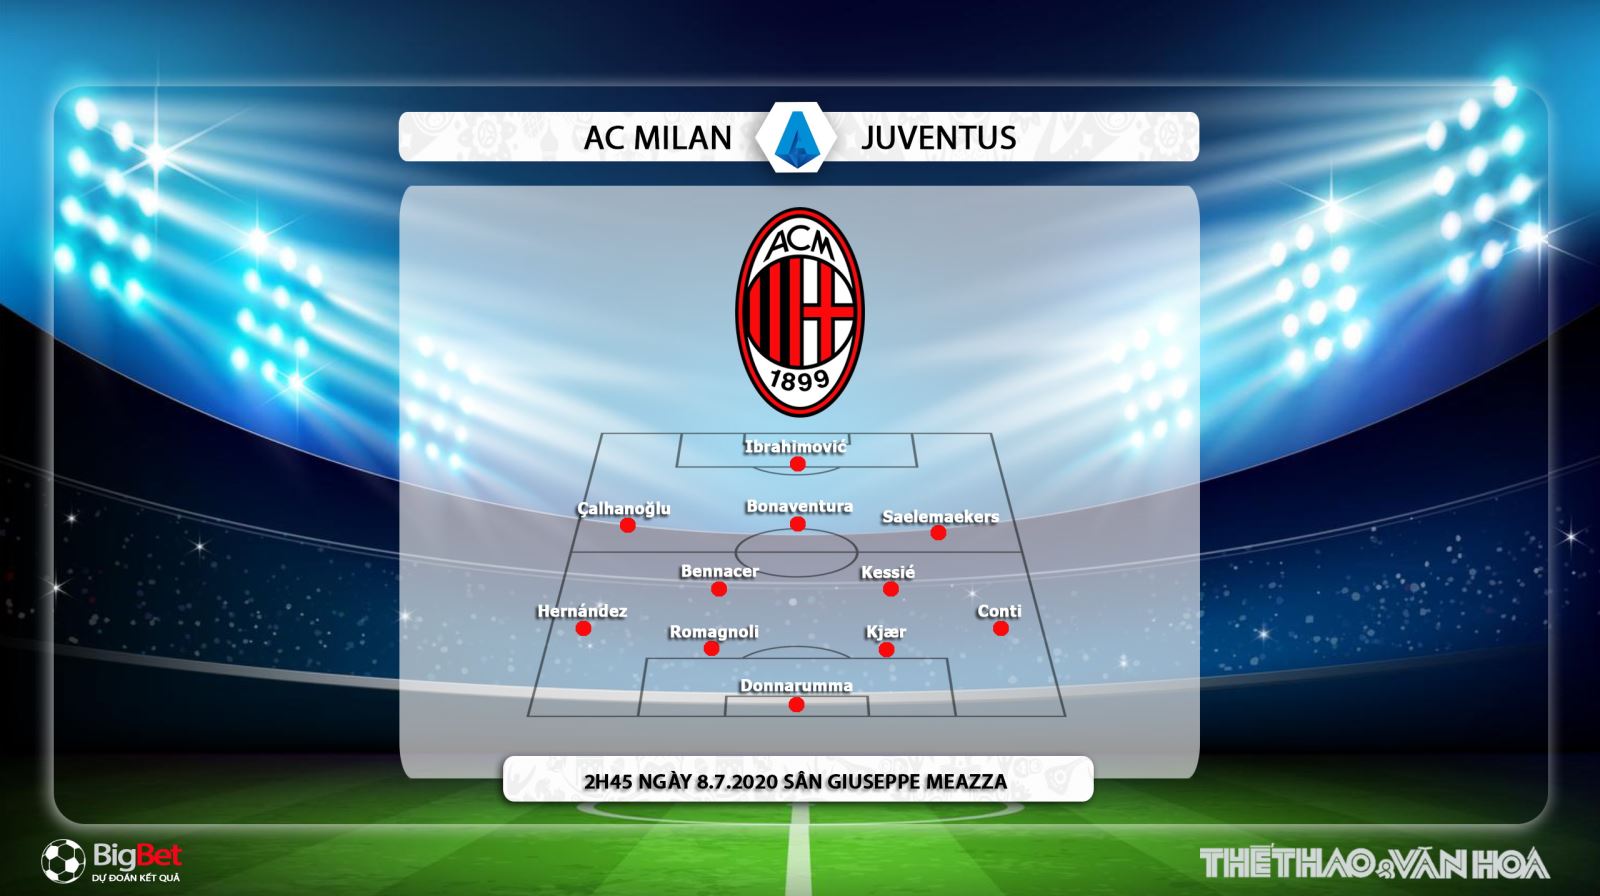 AC Milan vs Juventus, AC Milan, Juventus, nhận định bóng đá AC Milan vs Juventus, trực tiếp AC Milan vs Juventus, nhận định AC Milan vs Juventus, dự đoán, kèo bóng đá, nhận định bóng đá